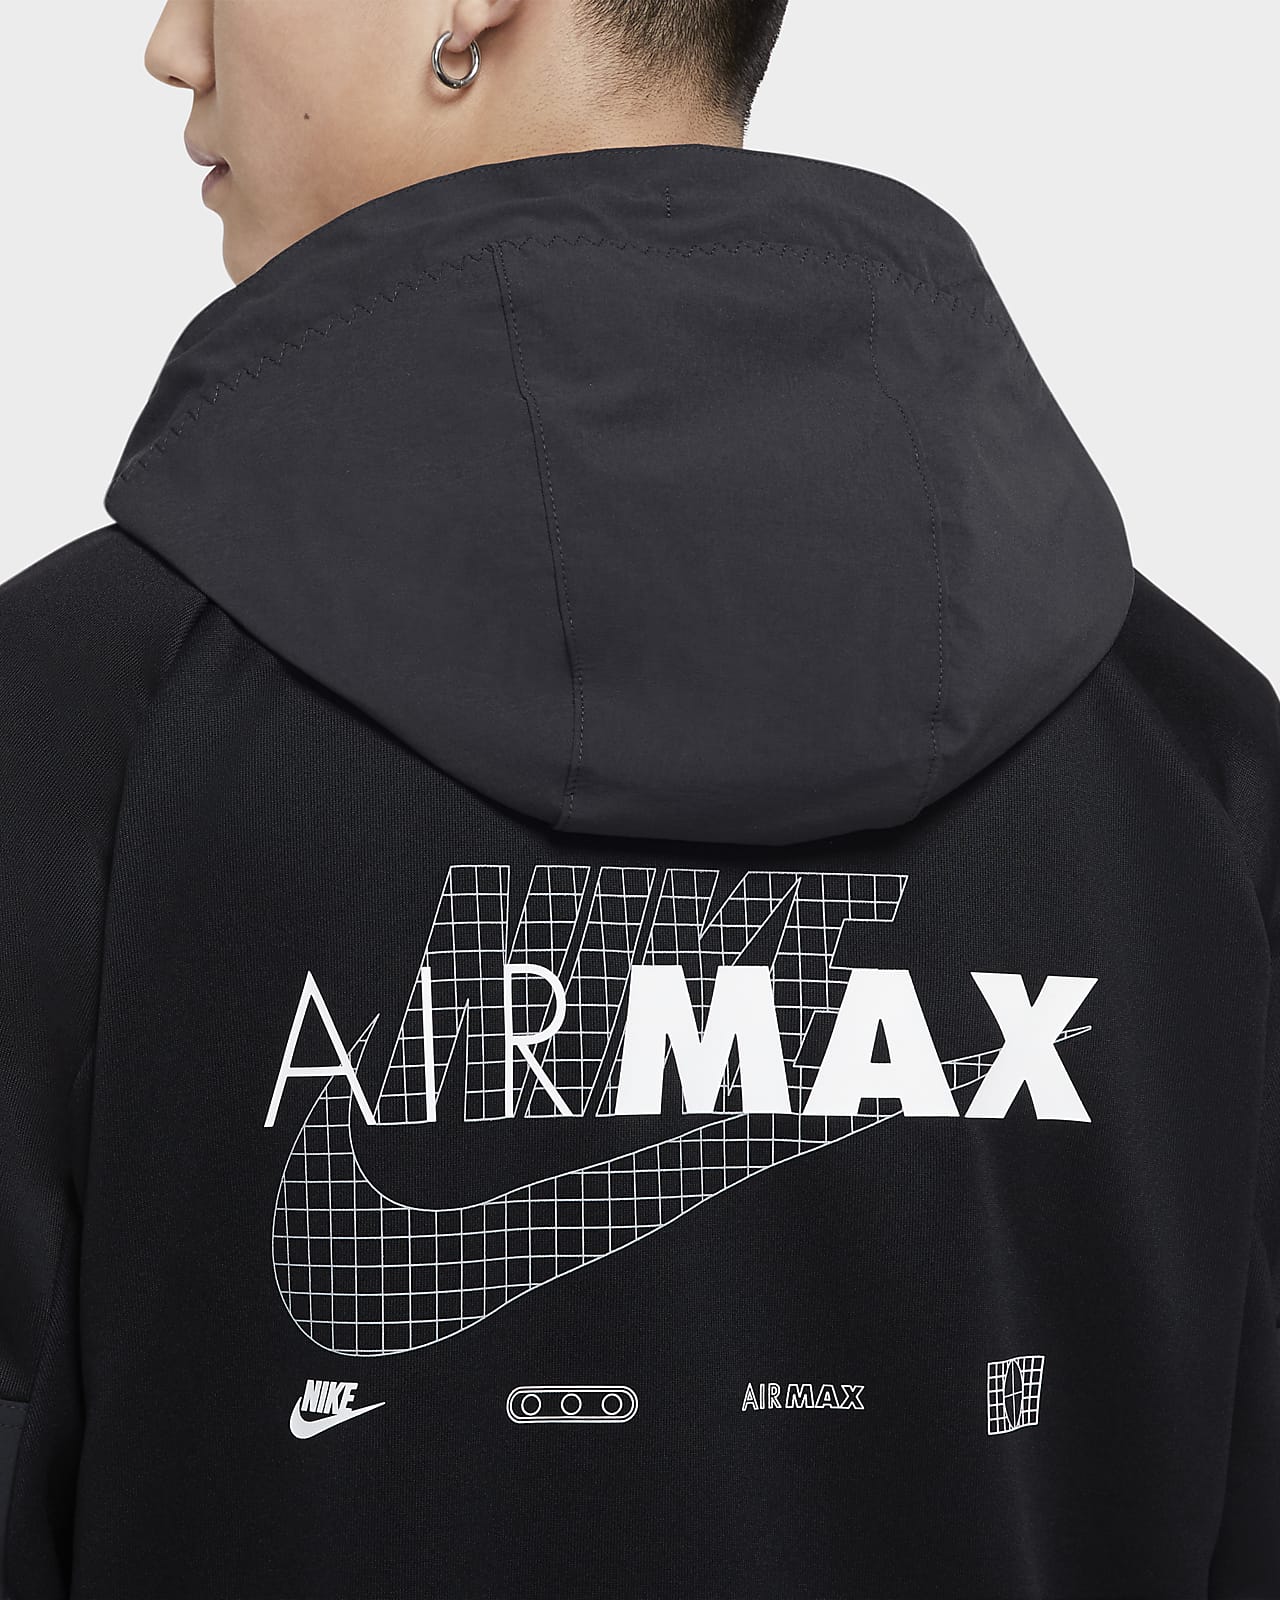 air max clothing